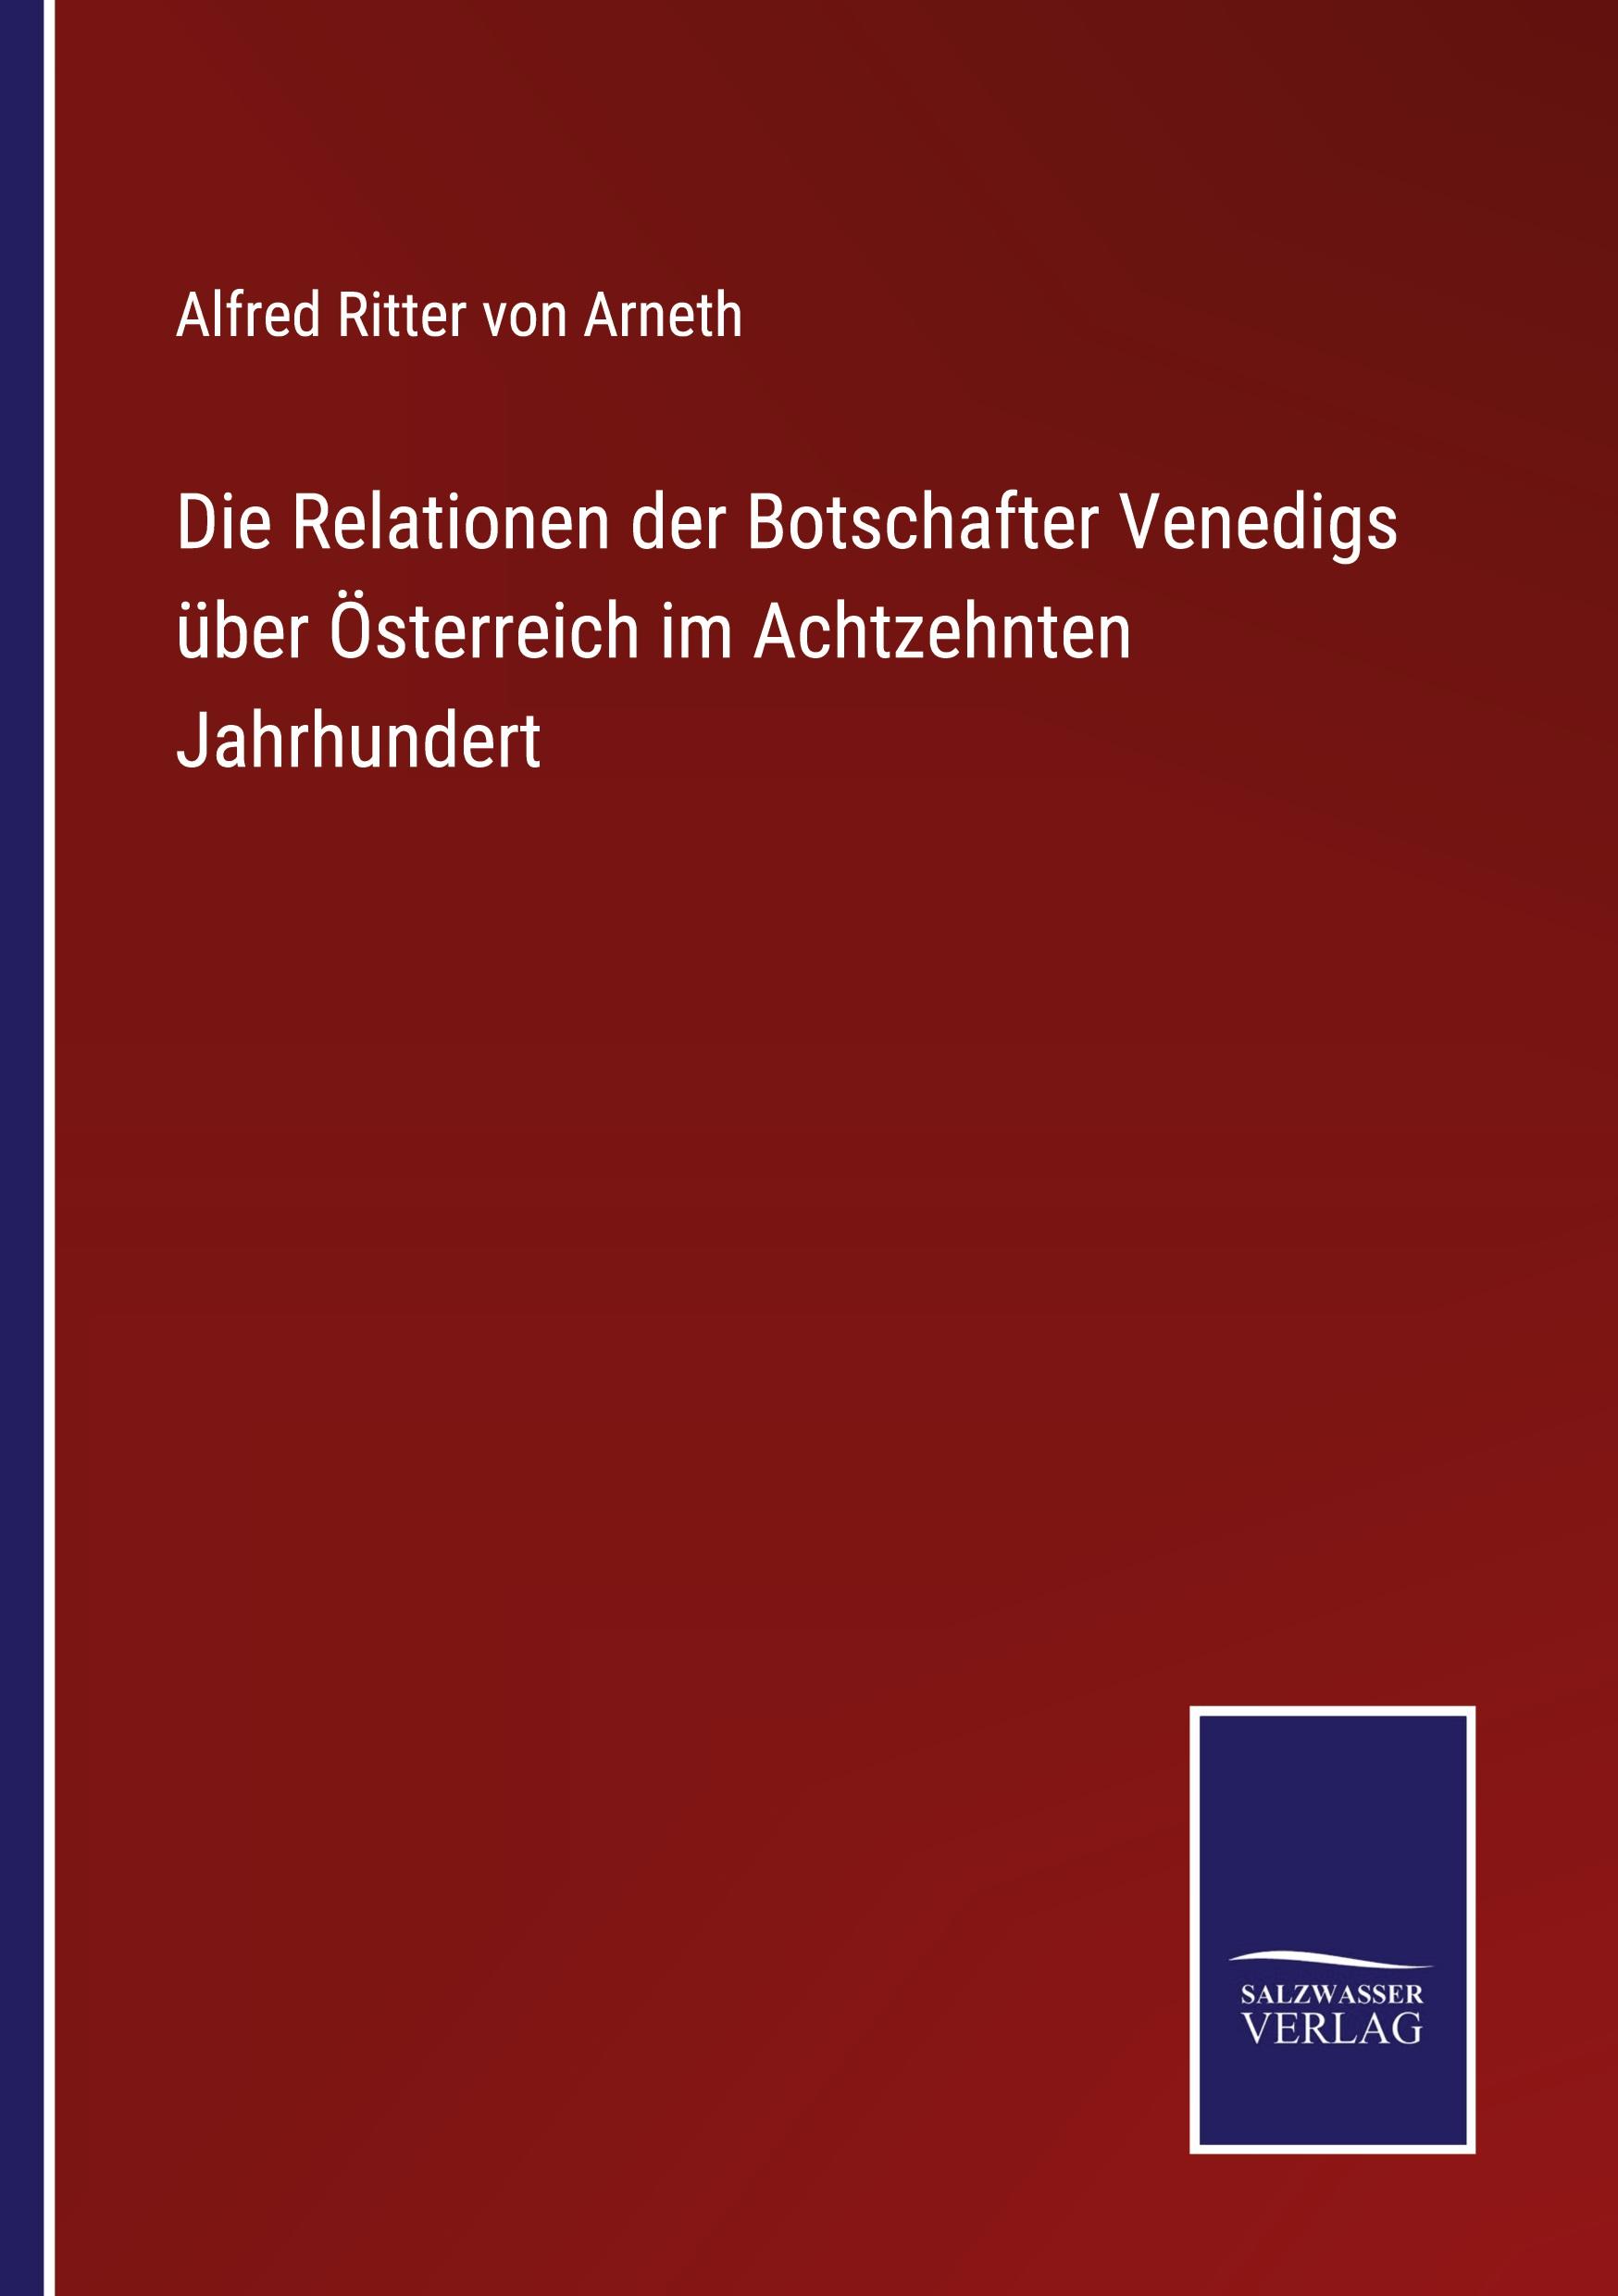 Die Relationen der Botschafter Venedigs ueber Oesterreich im Achtzehnten Jahrhundert - Arneth, Alfred Ritter Von